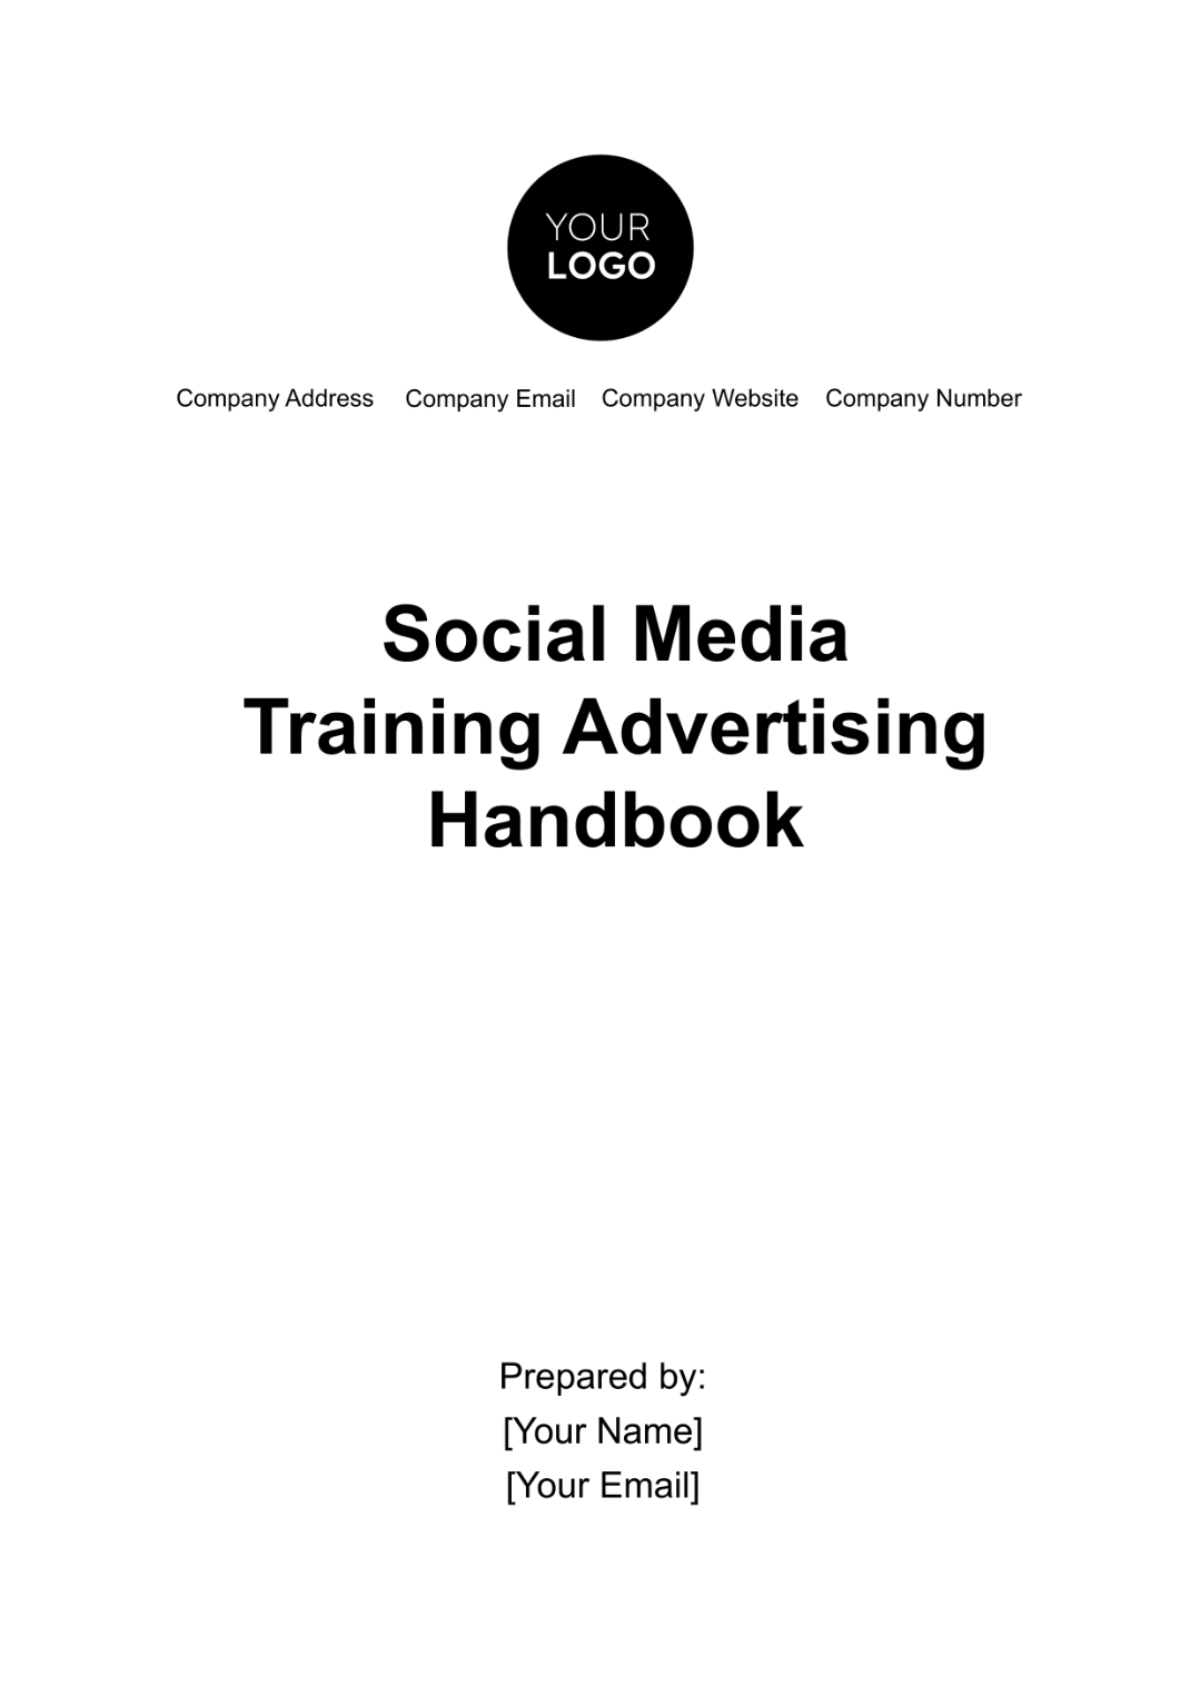 Free Social Media Training Advertising Handbook Template